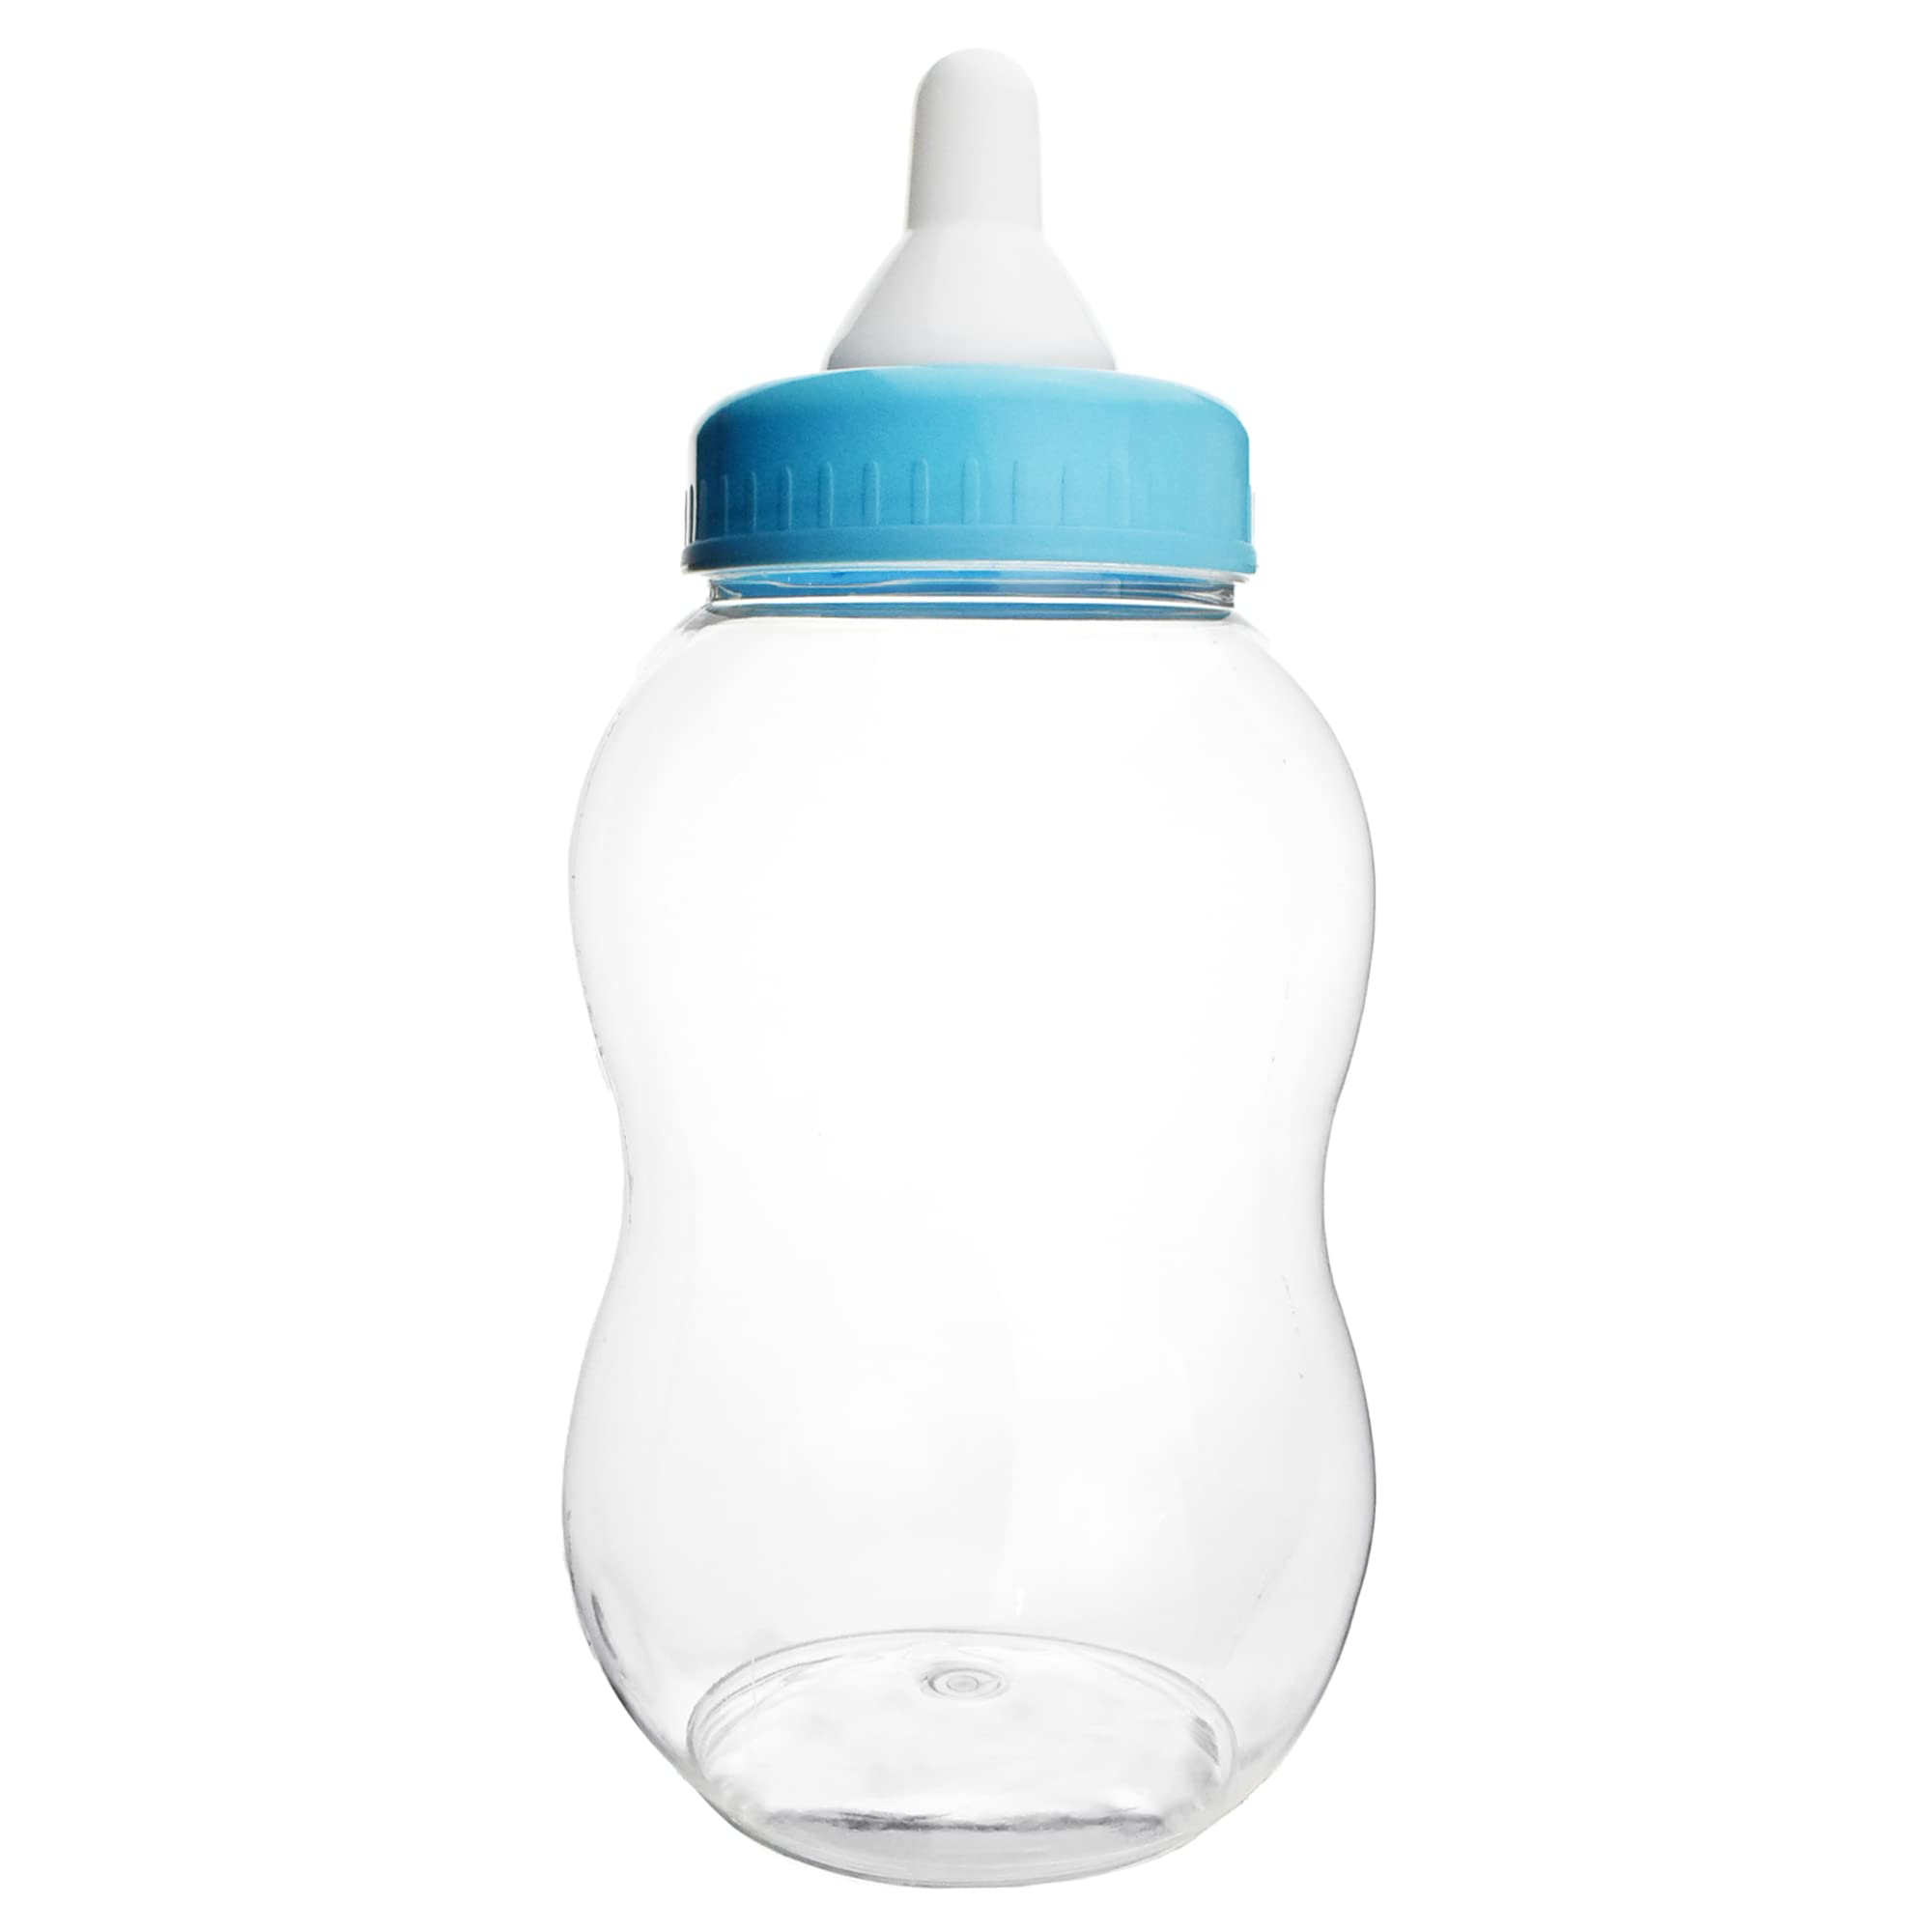 Homeford Jumbo Plastic Baby Milk Bottle Coin Bank 15-Inch - Light Blue